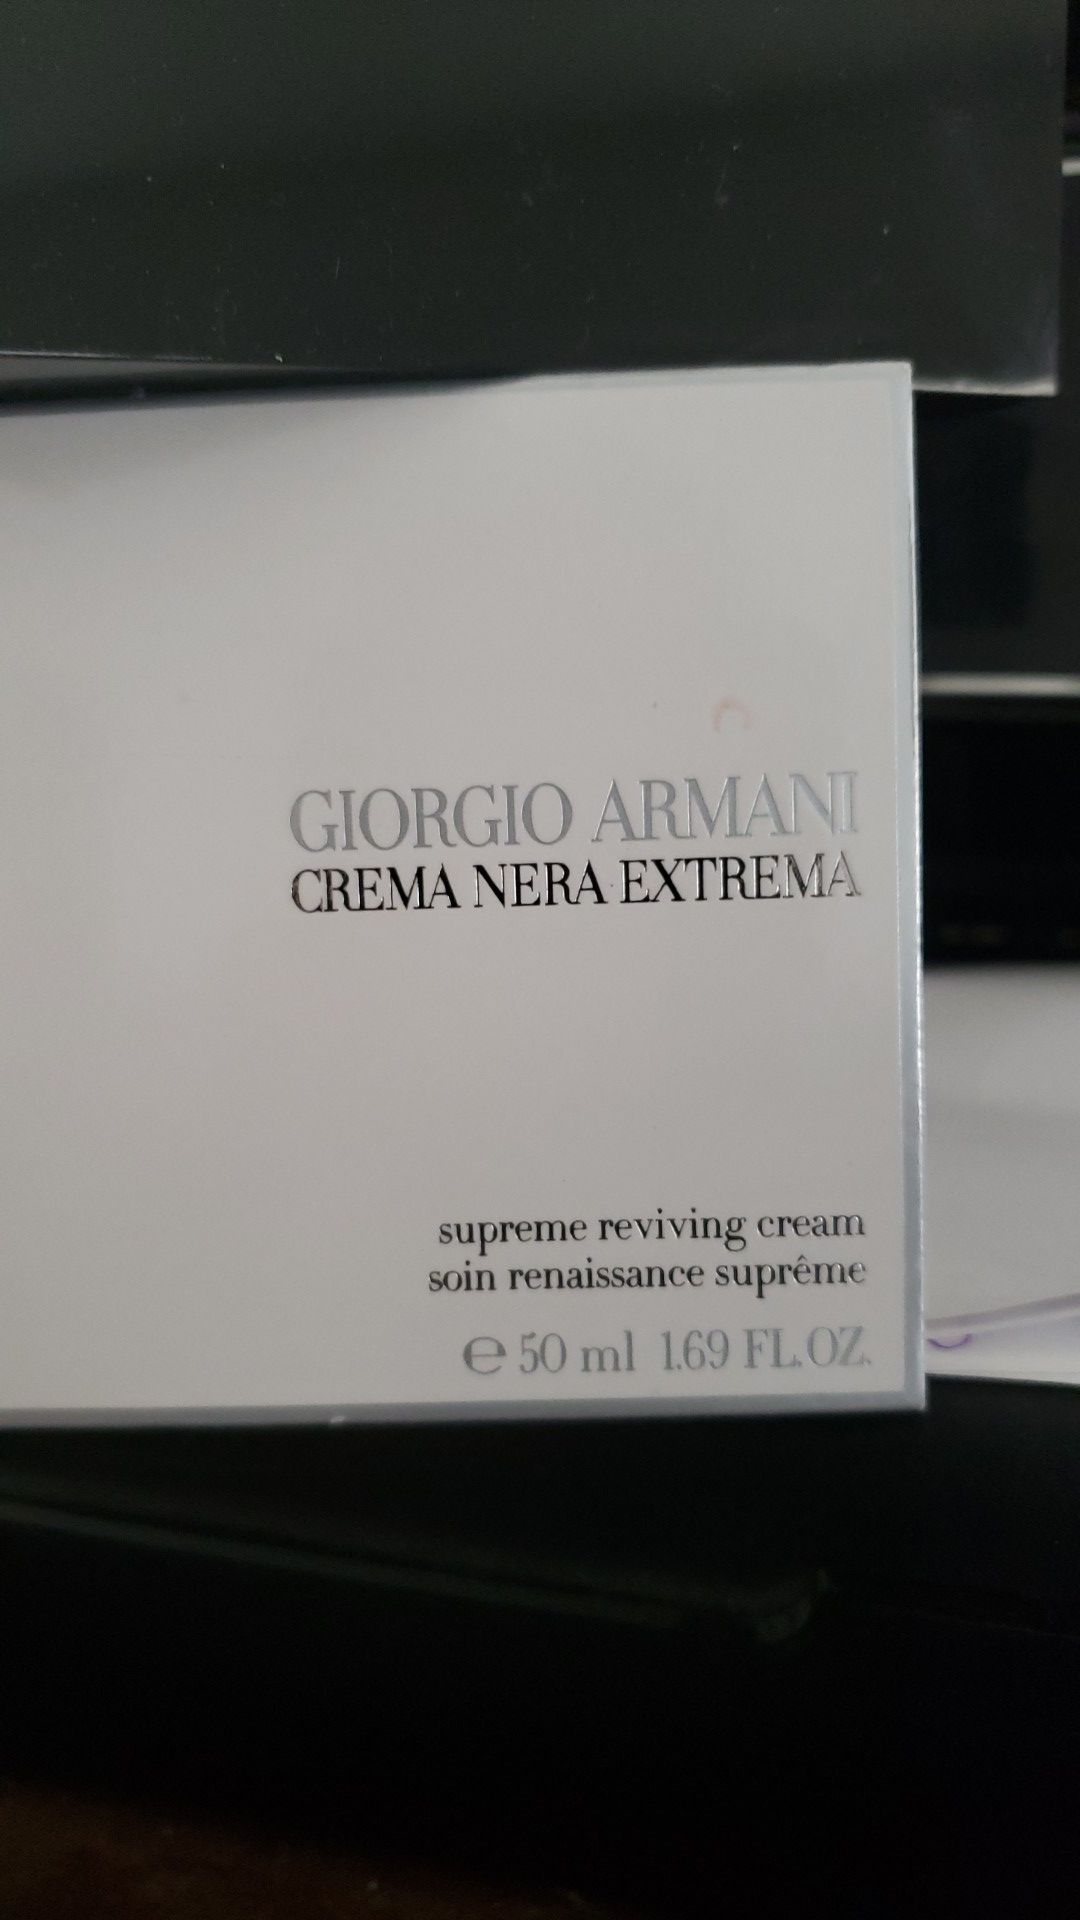 Giorgio Armani Crema Nera Extrema